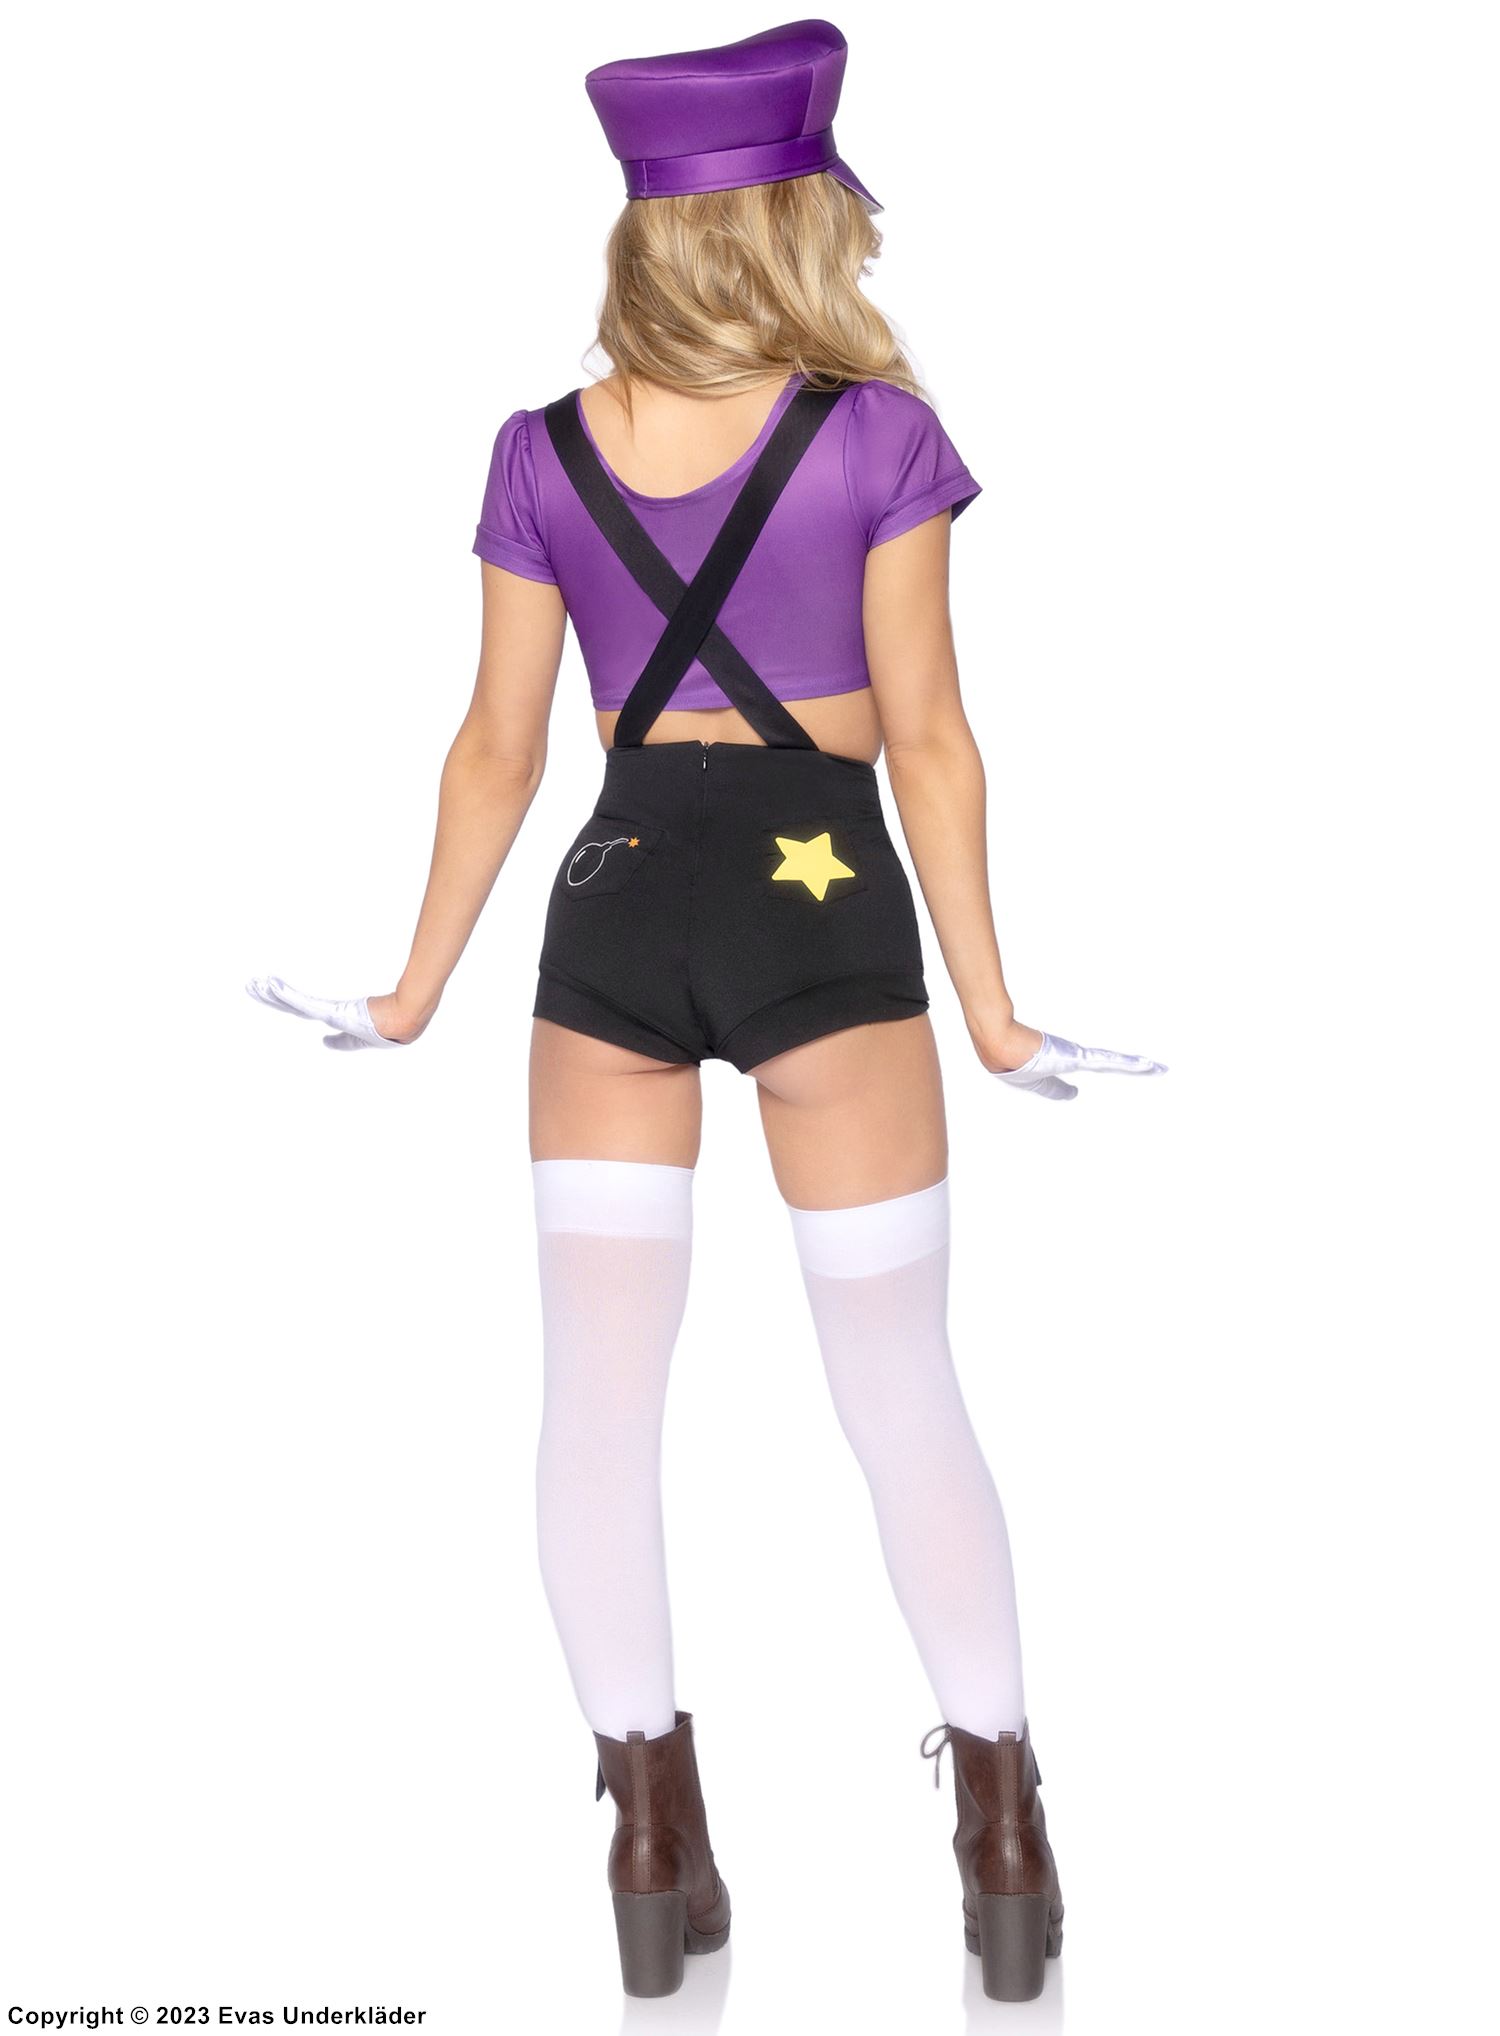 Weibliche Kriegerin aus Super Mario Bros, Kostüm mit Top und Shorts, gekreuzte Bänder, Tasten, Stern, Schnurrbart